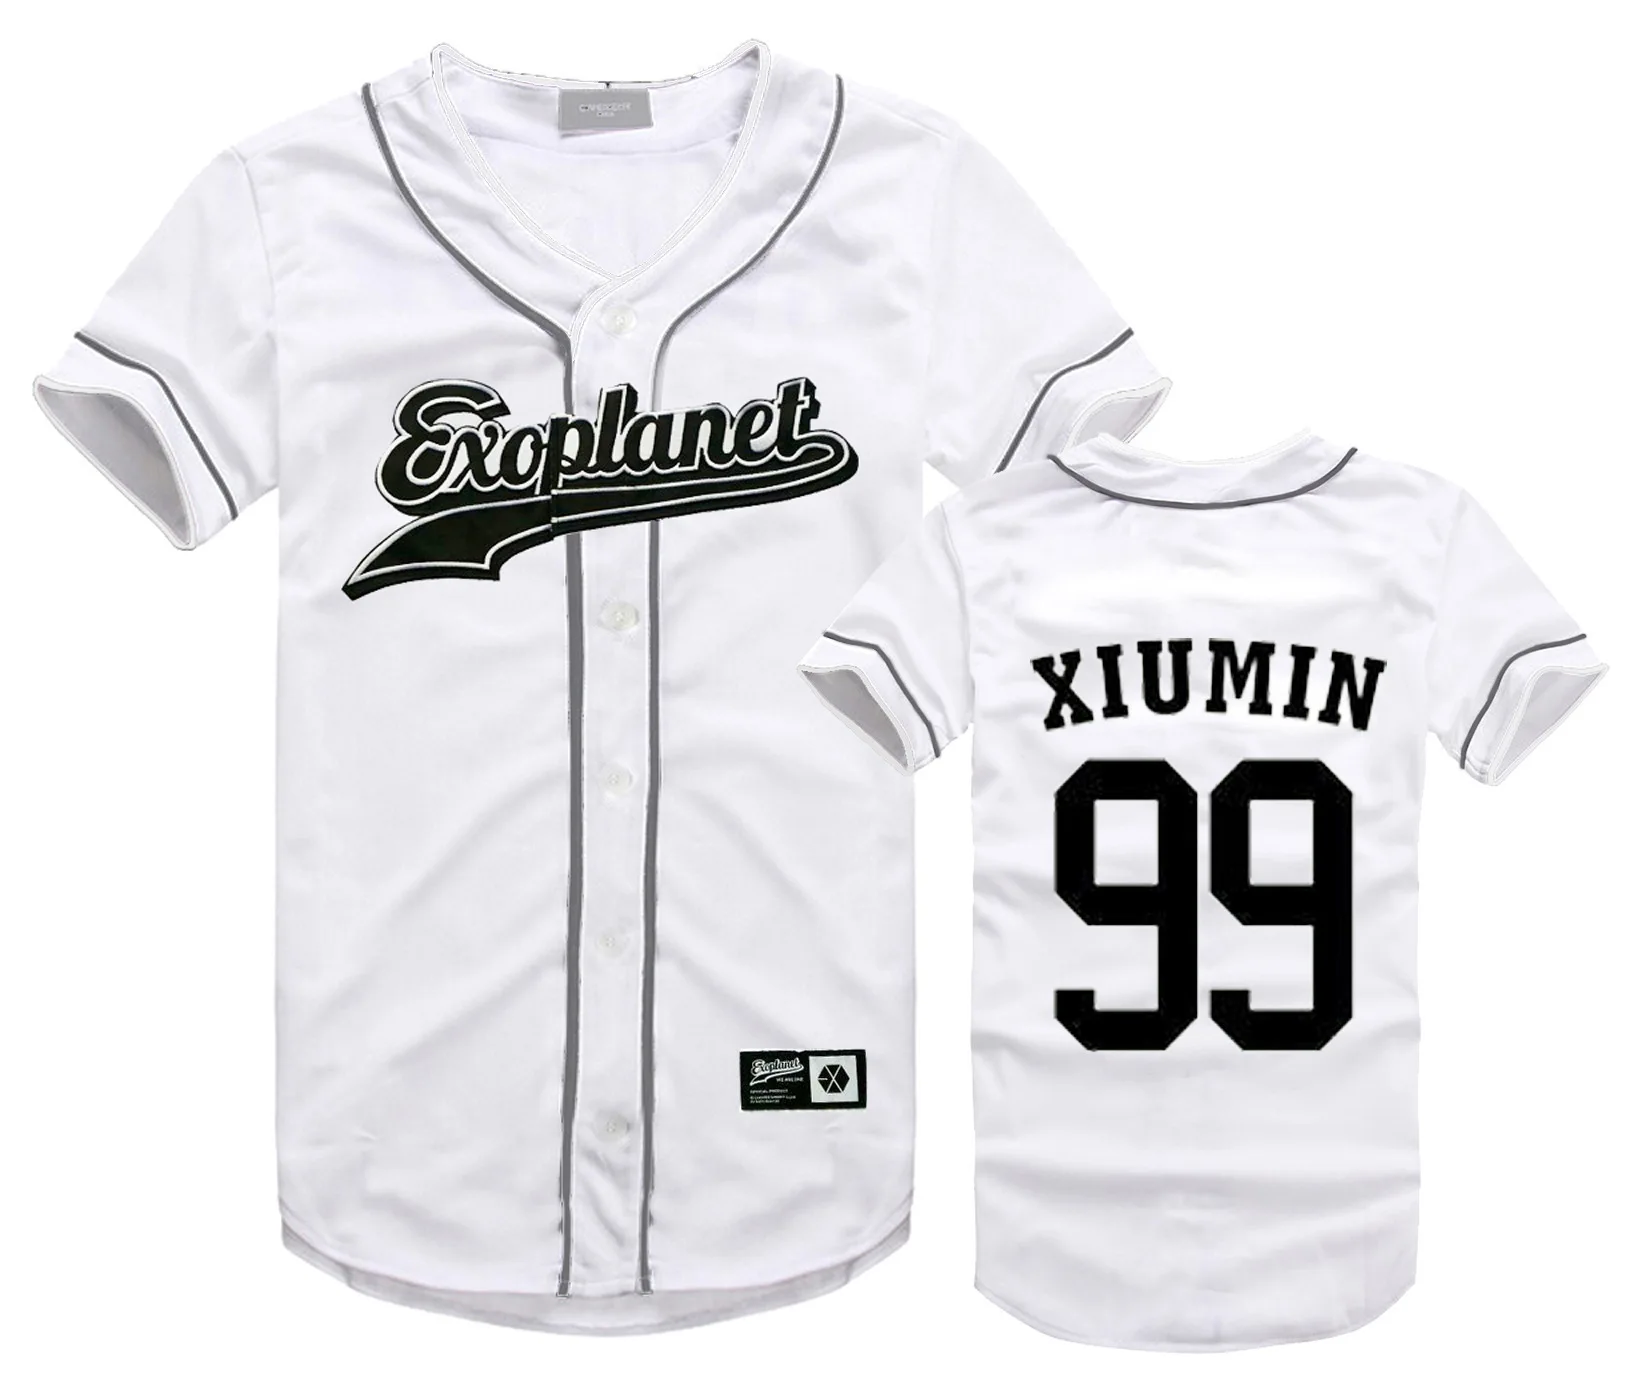 Exo футболка Женская бейсбольная футболка рубашка с коротким рукавом новая стильная одежда BAEKHYUN LAY SEHUN Tao DO SUHO футболка Femme